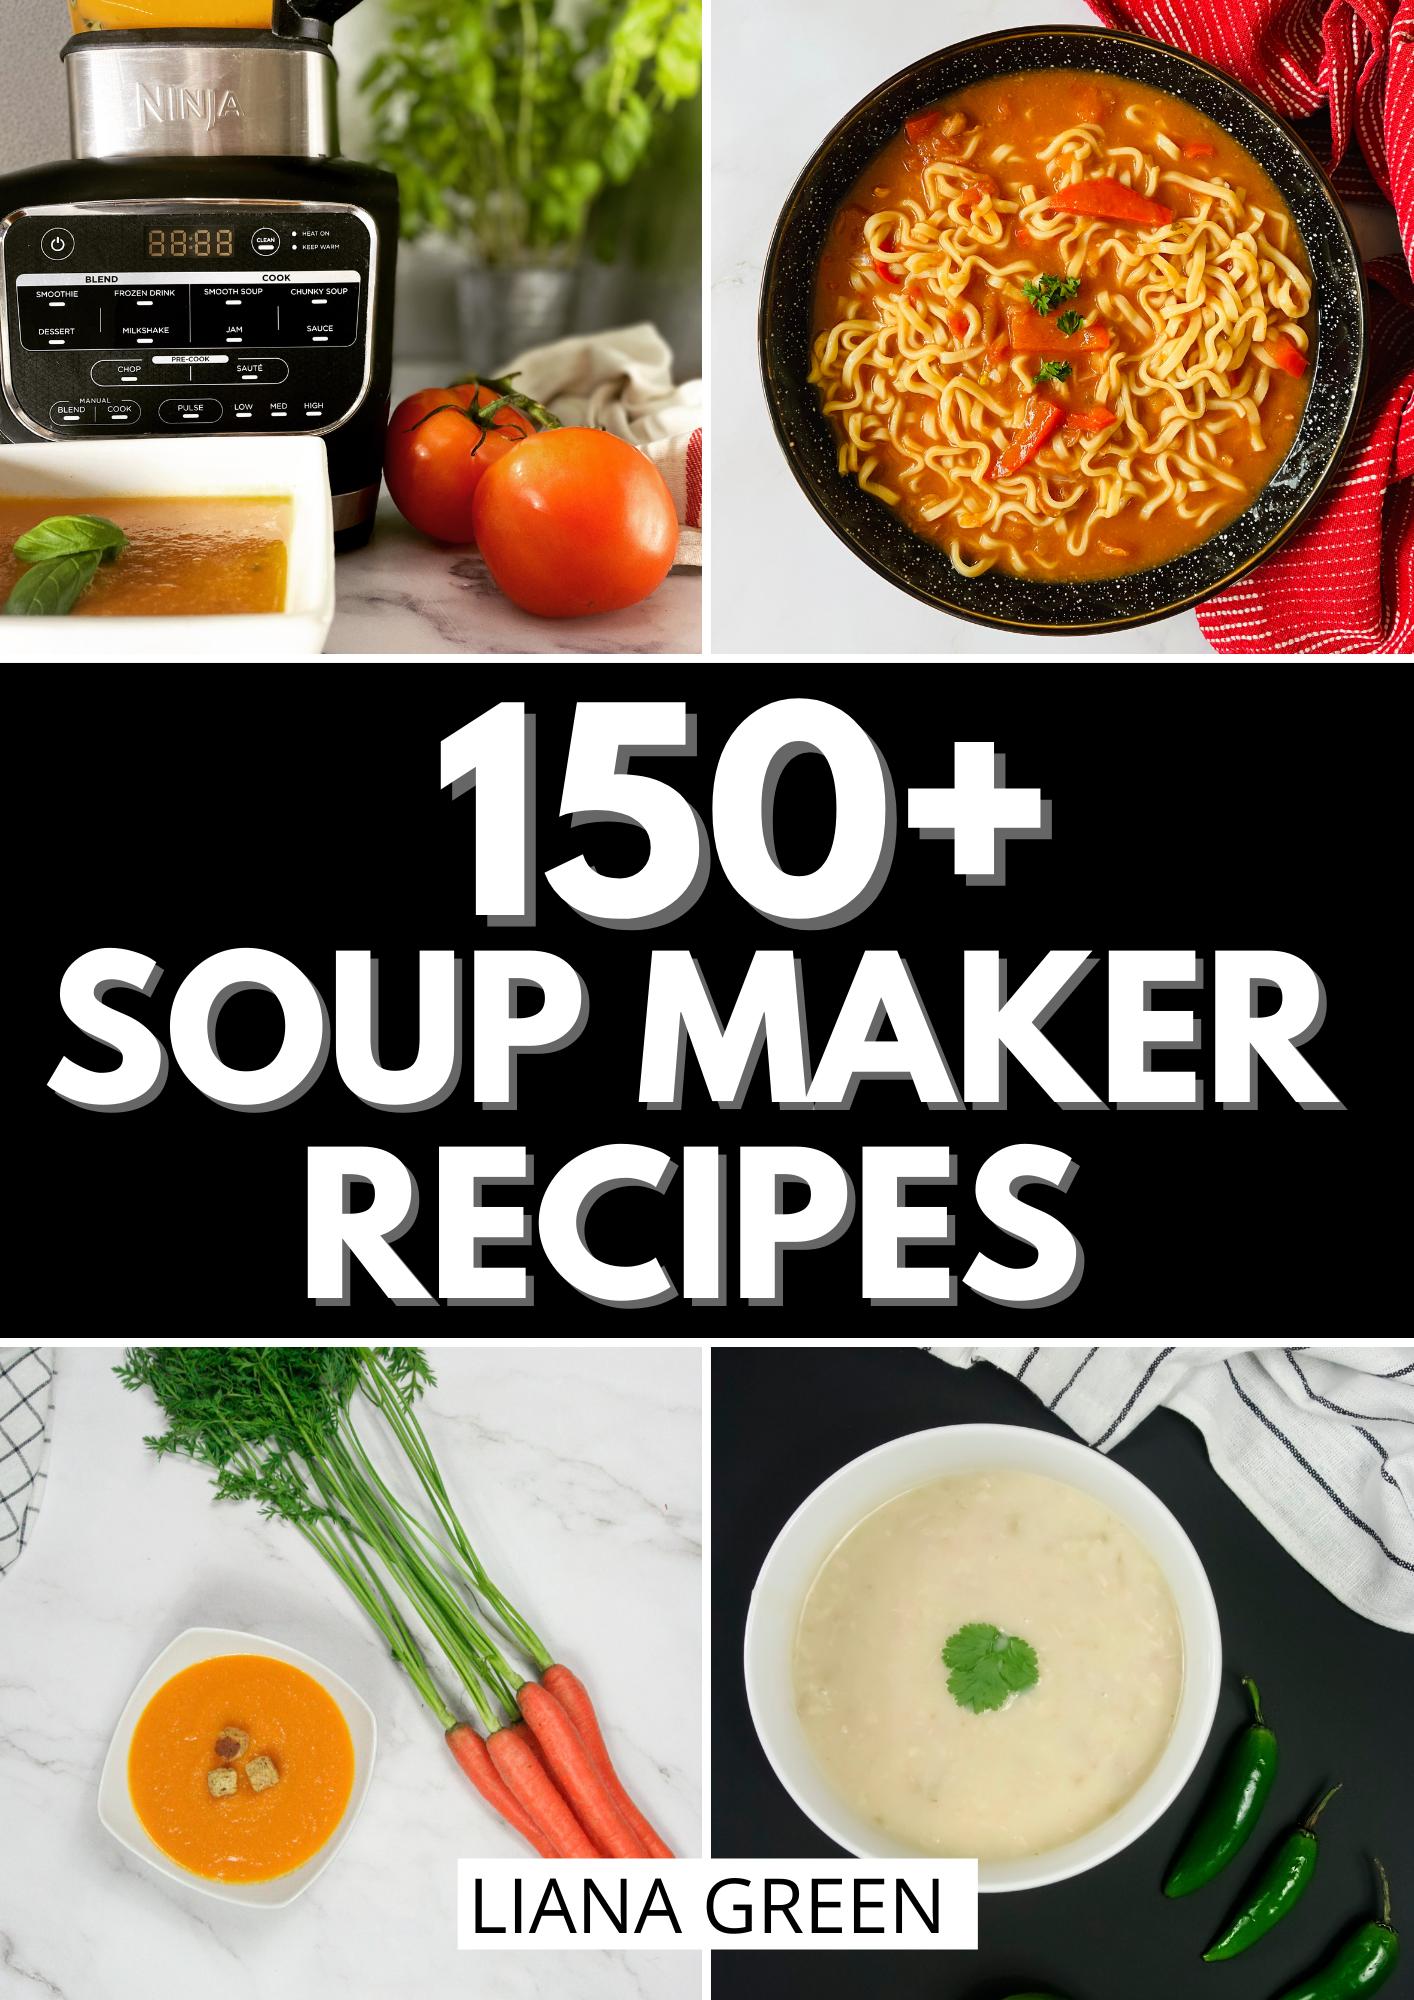 150+ Soup Maker Recipes